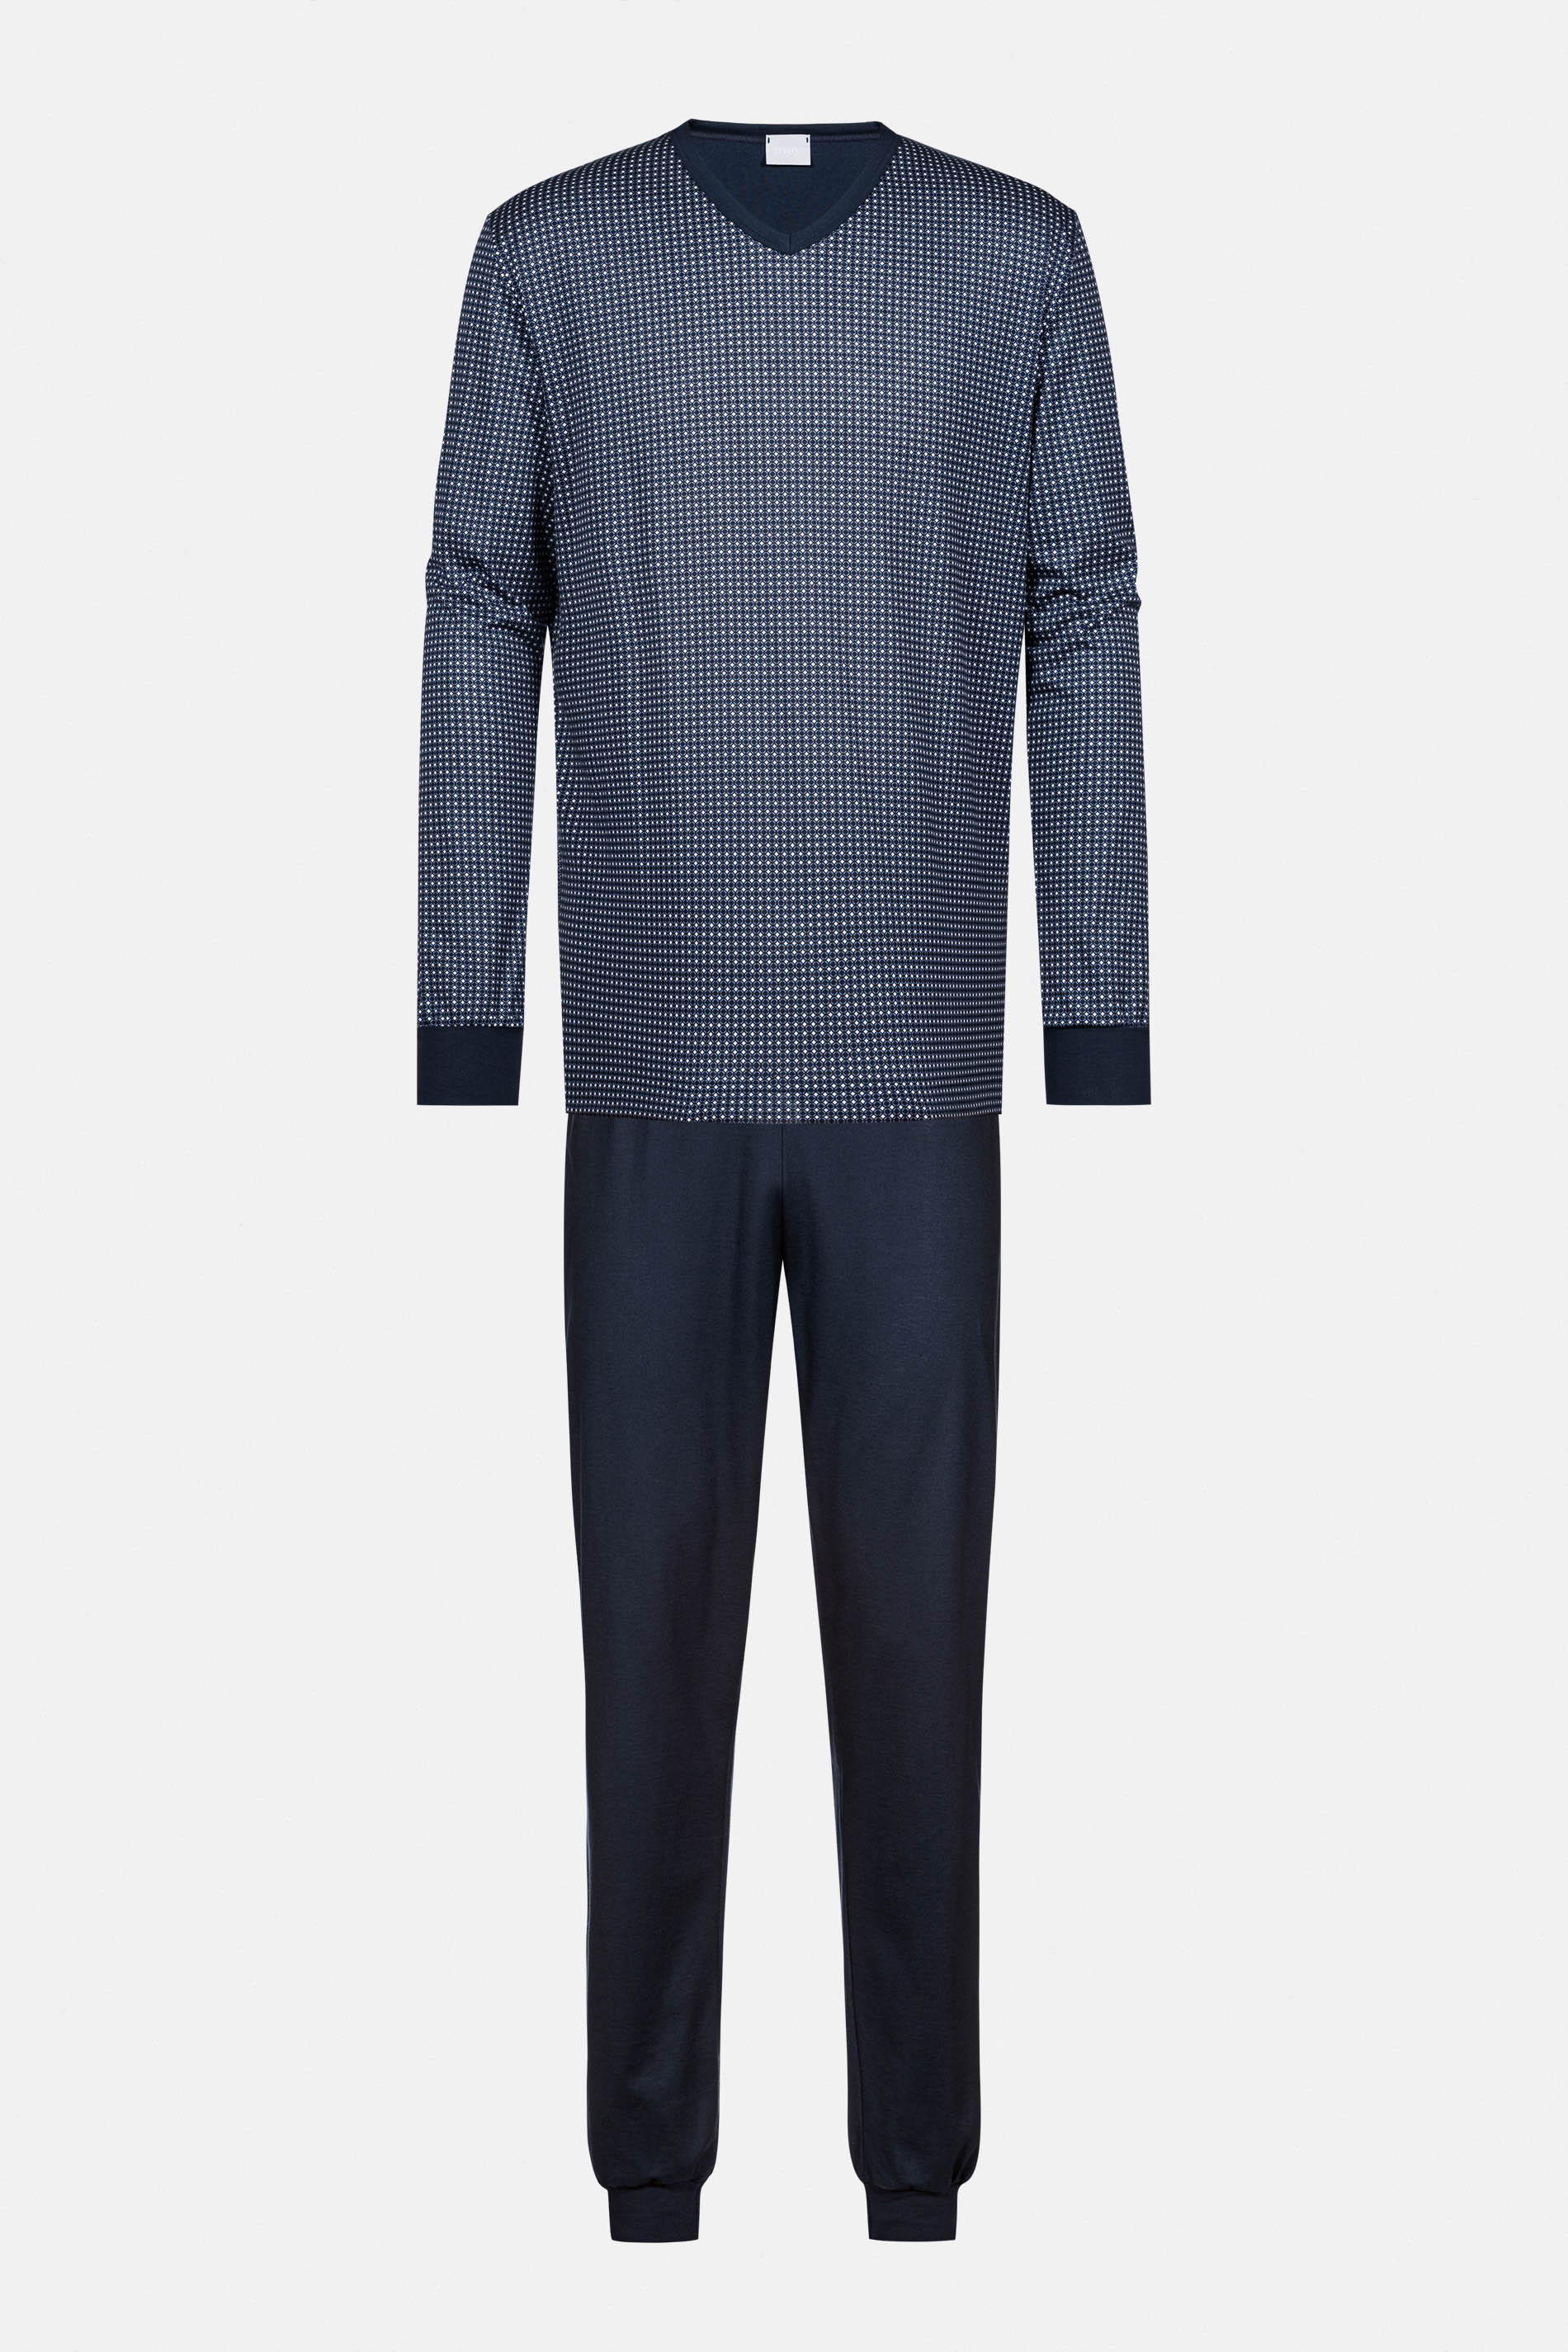 Schlafanzug Serie Blue Grid Freisteller | mey®